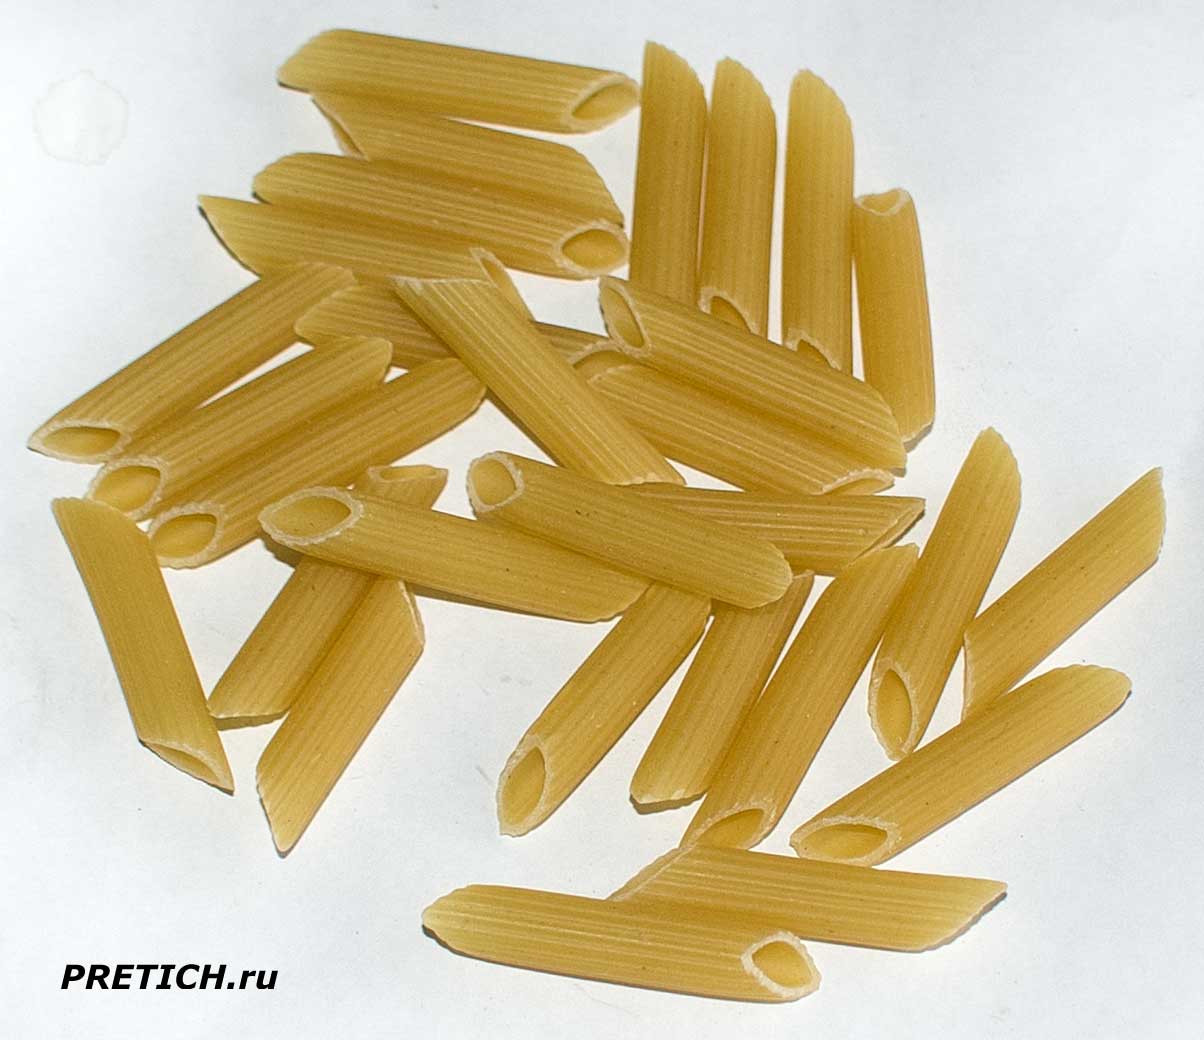 Макароны перья 8 мм Bella Pasta от Цесна-Мак, отзыв и полное описание